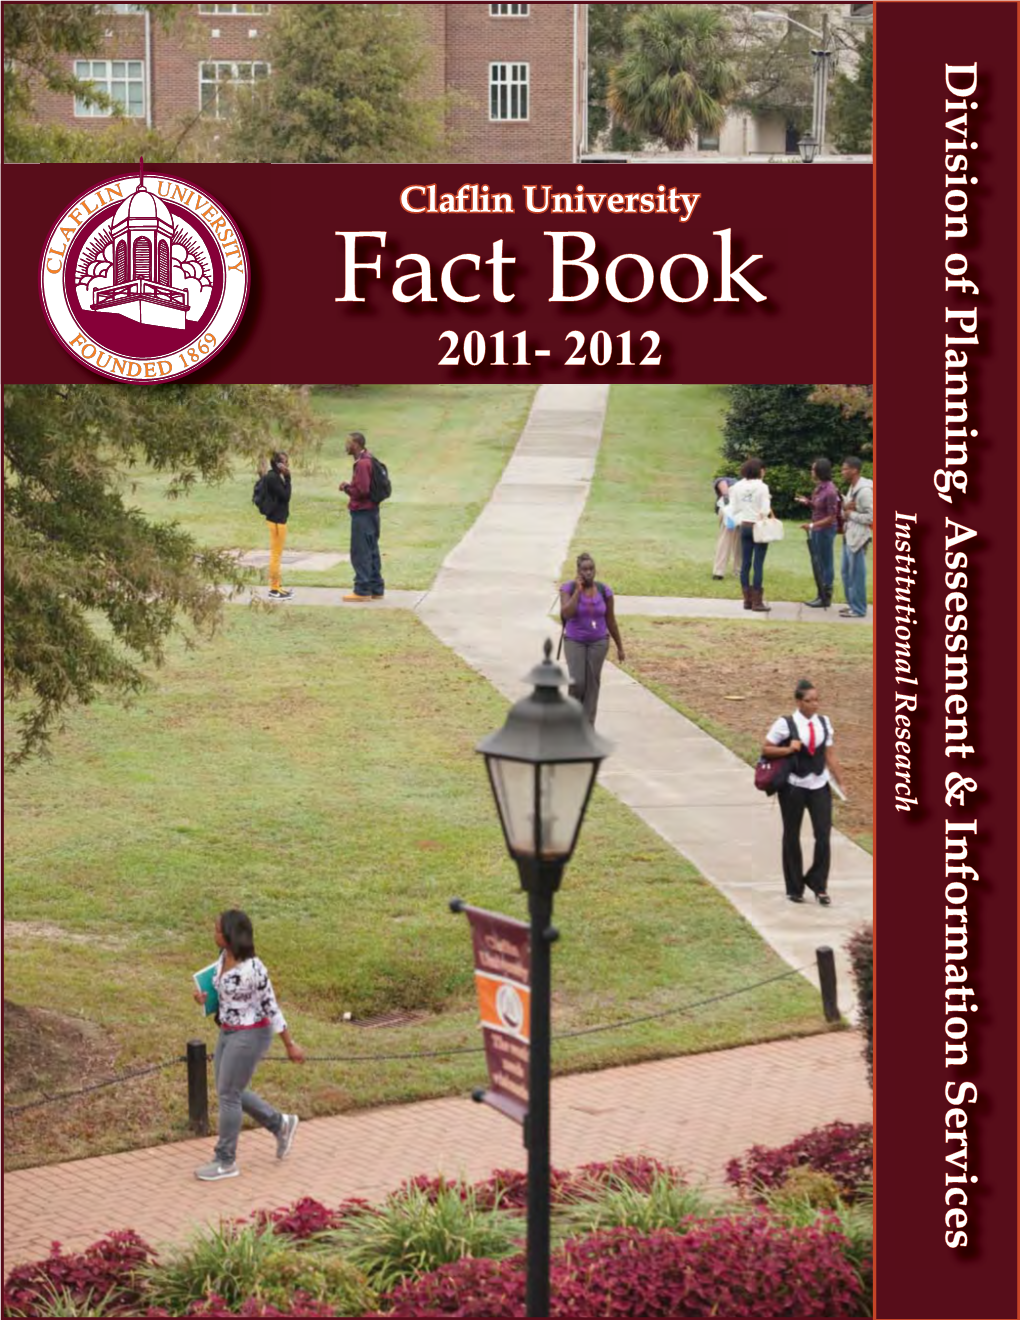 Fact Book 2011-2012